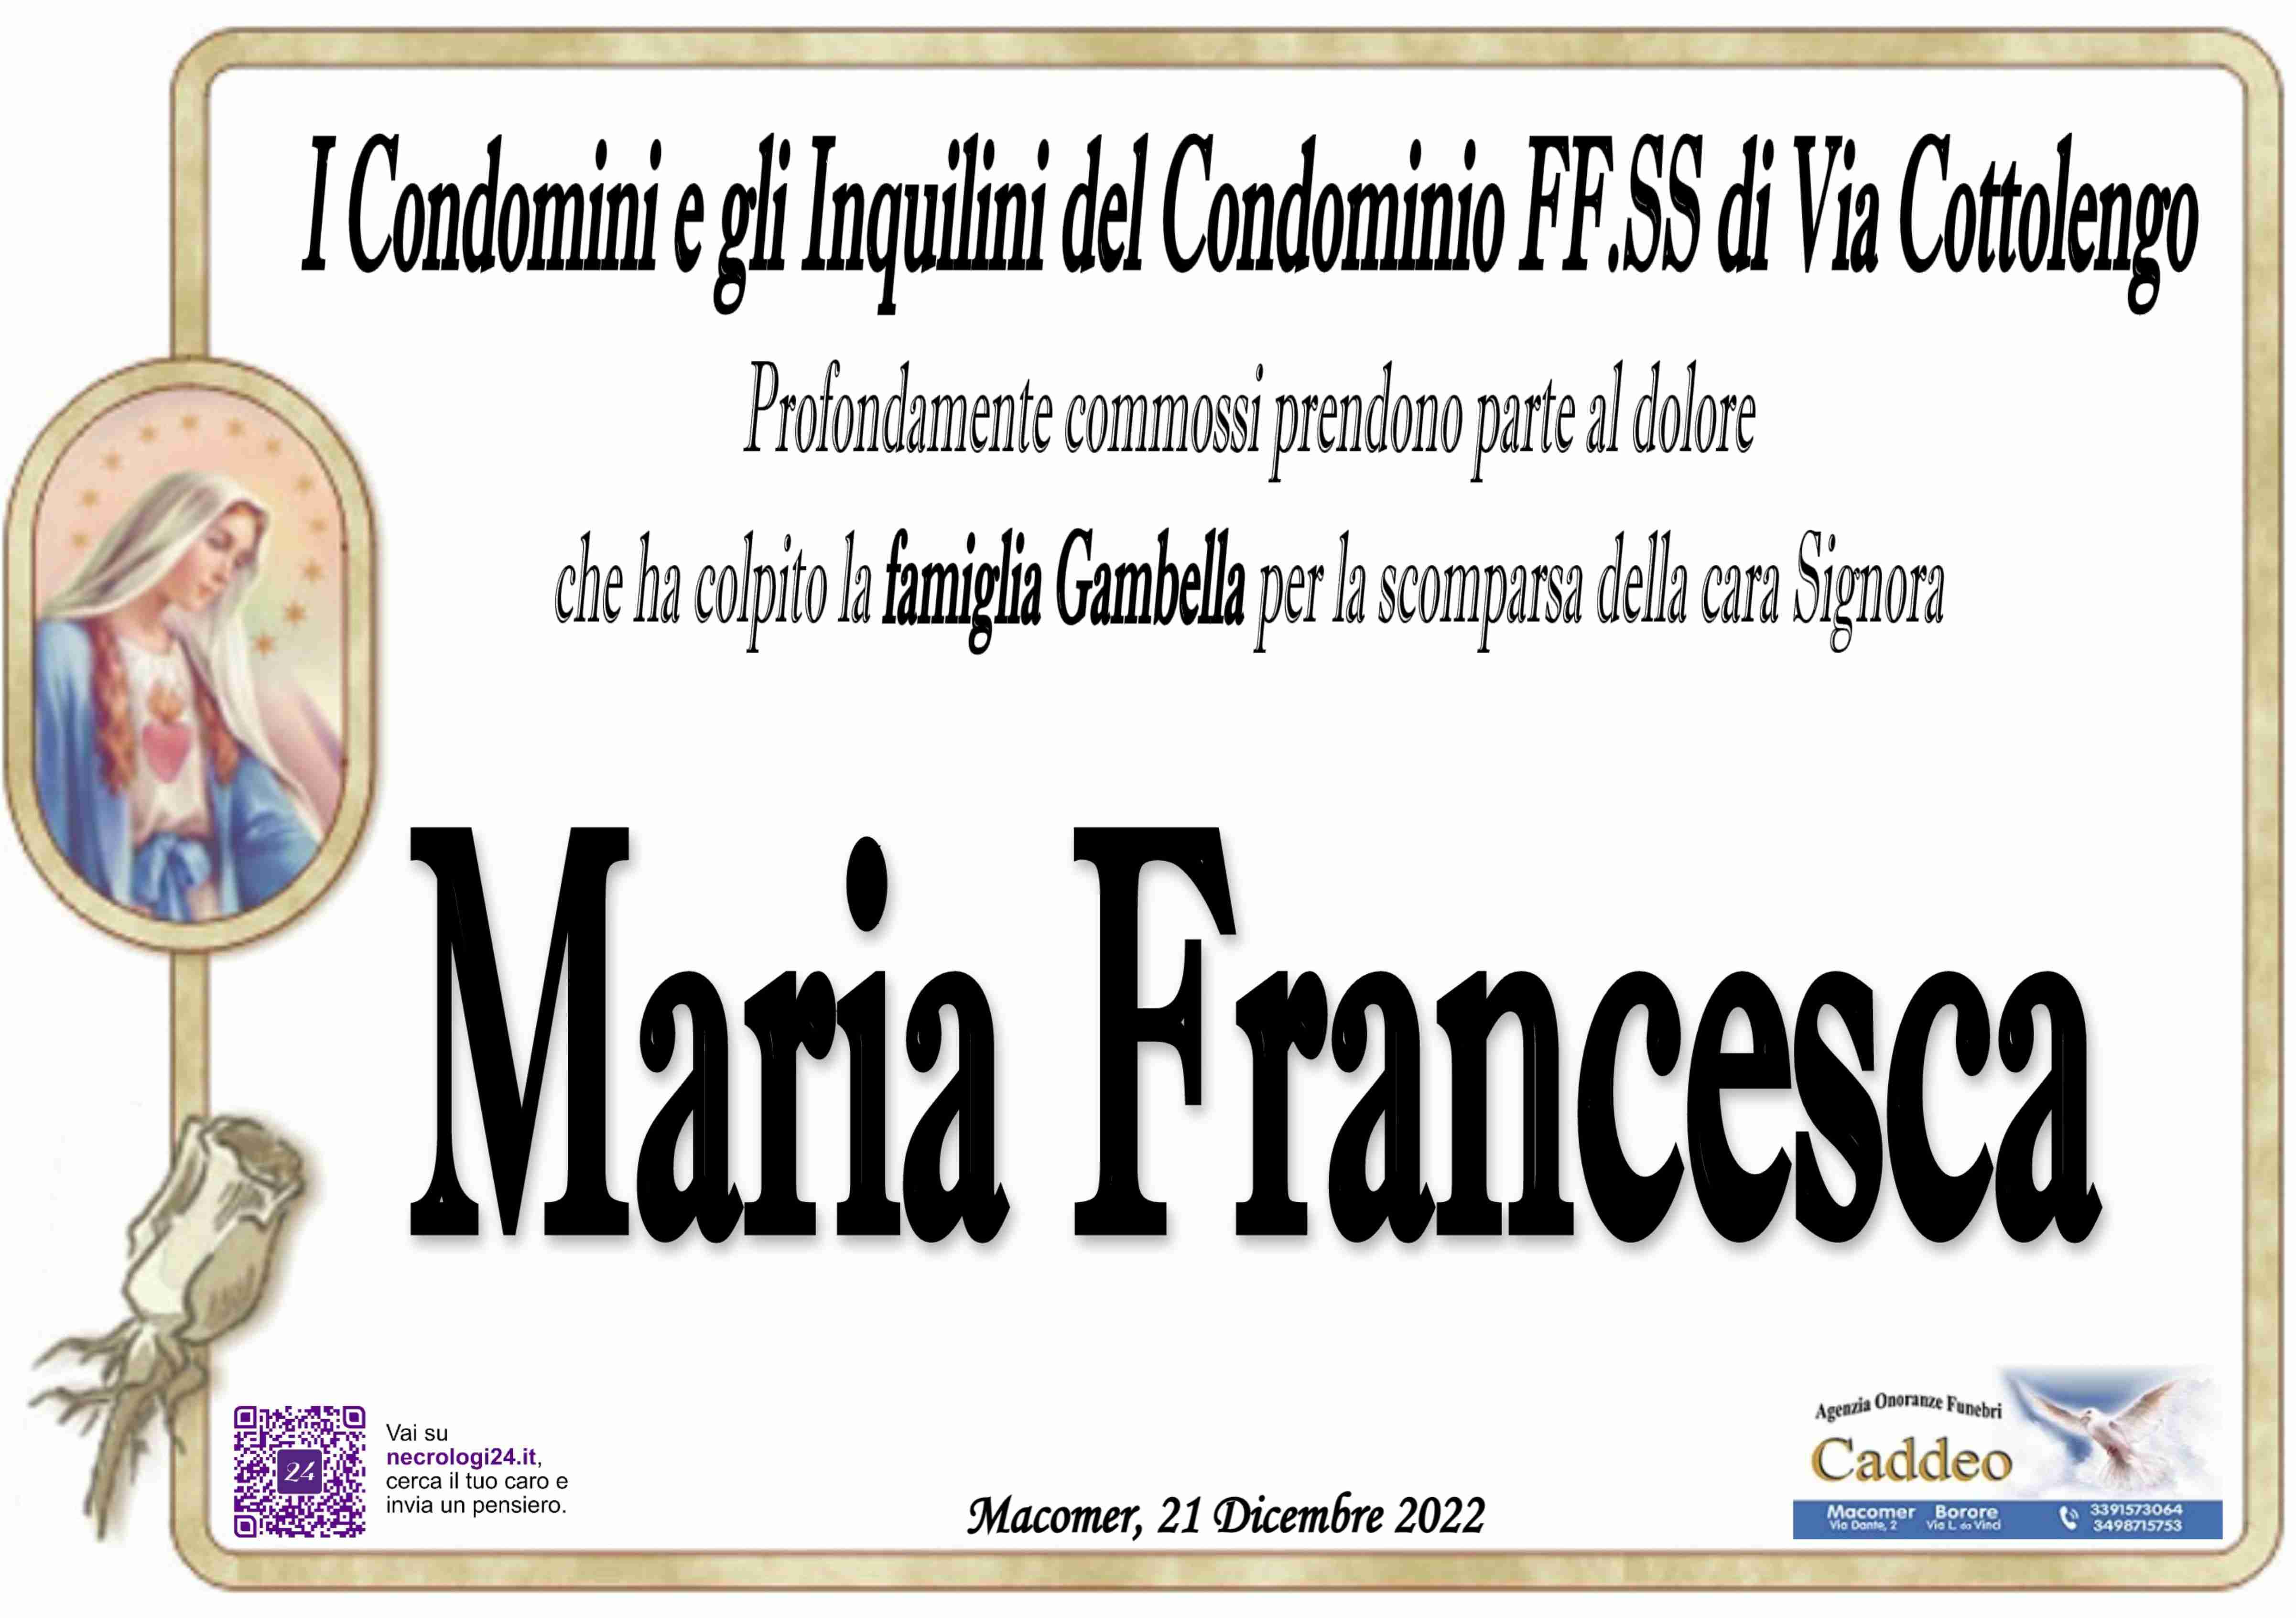 Maria Francesca Massa